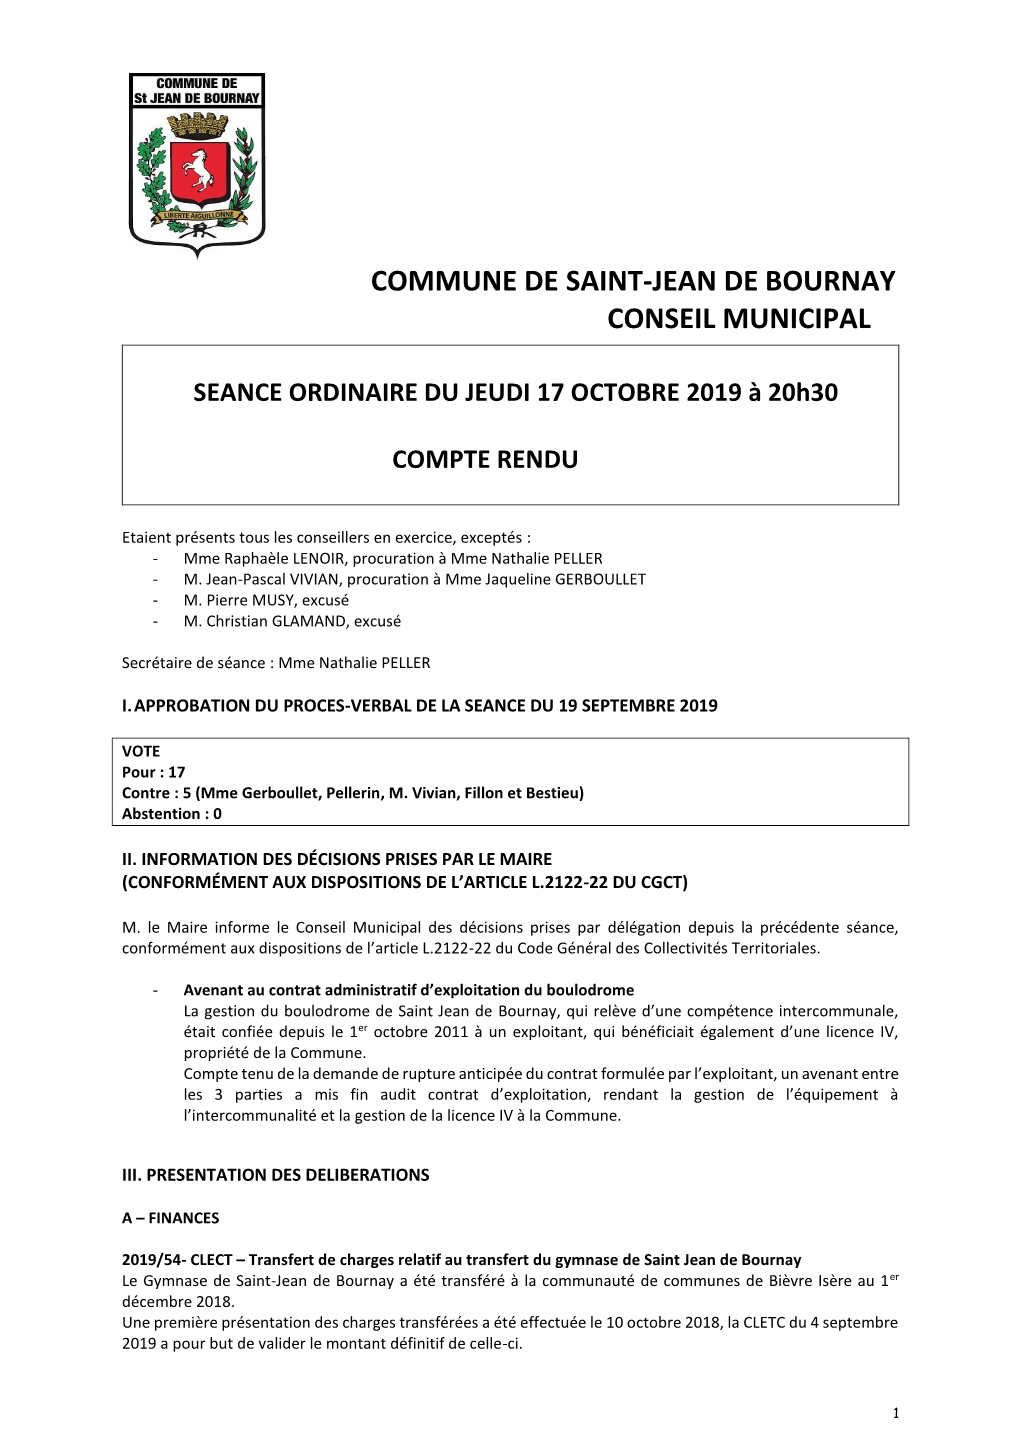 Commune De Saint-Jean De Bournay Conseil Municipal